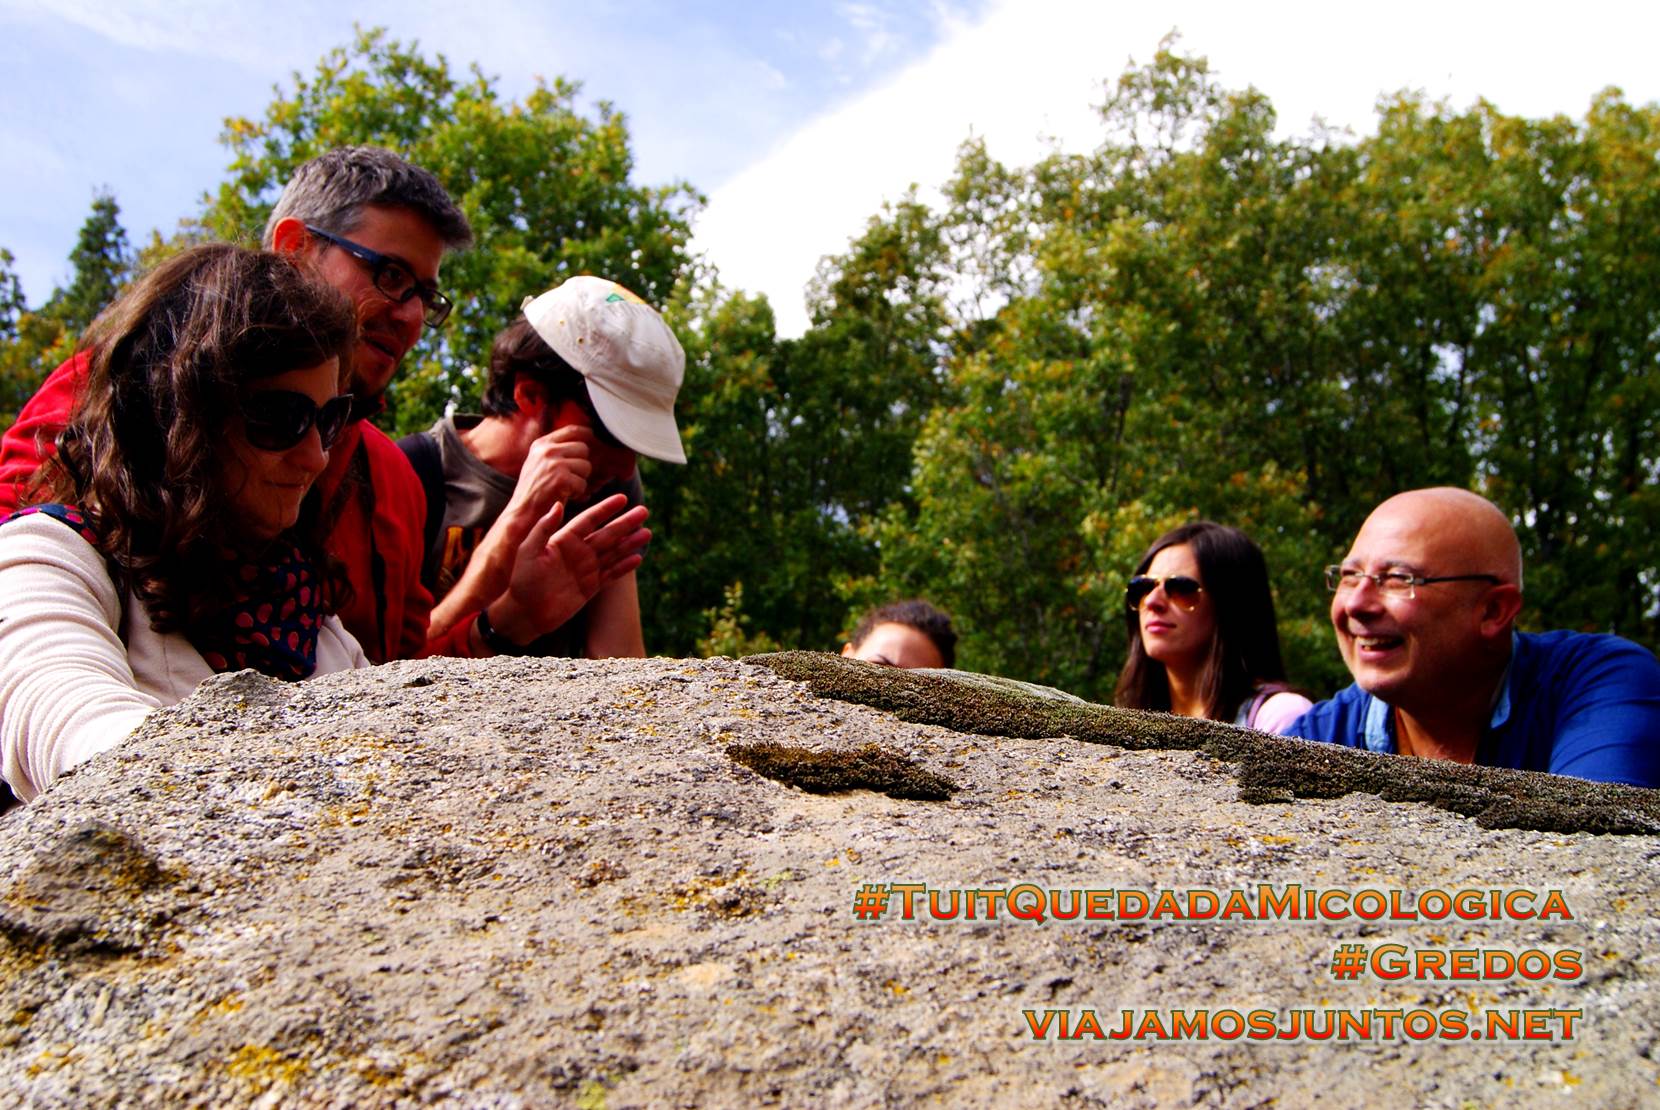 Piedra sagrada, Hoyocasero, Gredos, durante la #TuitQuedadaMicologica